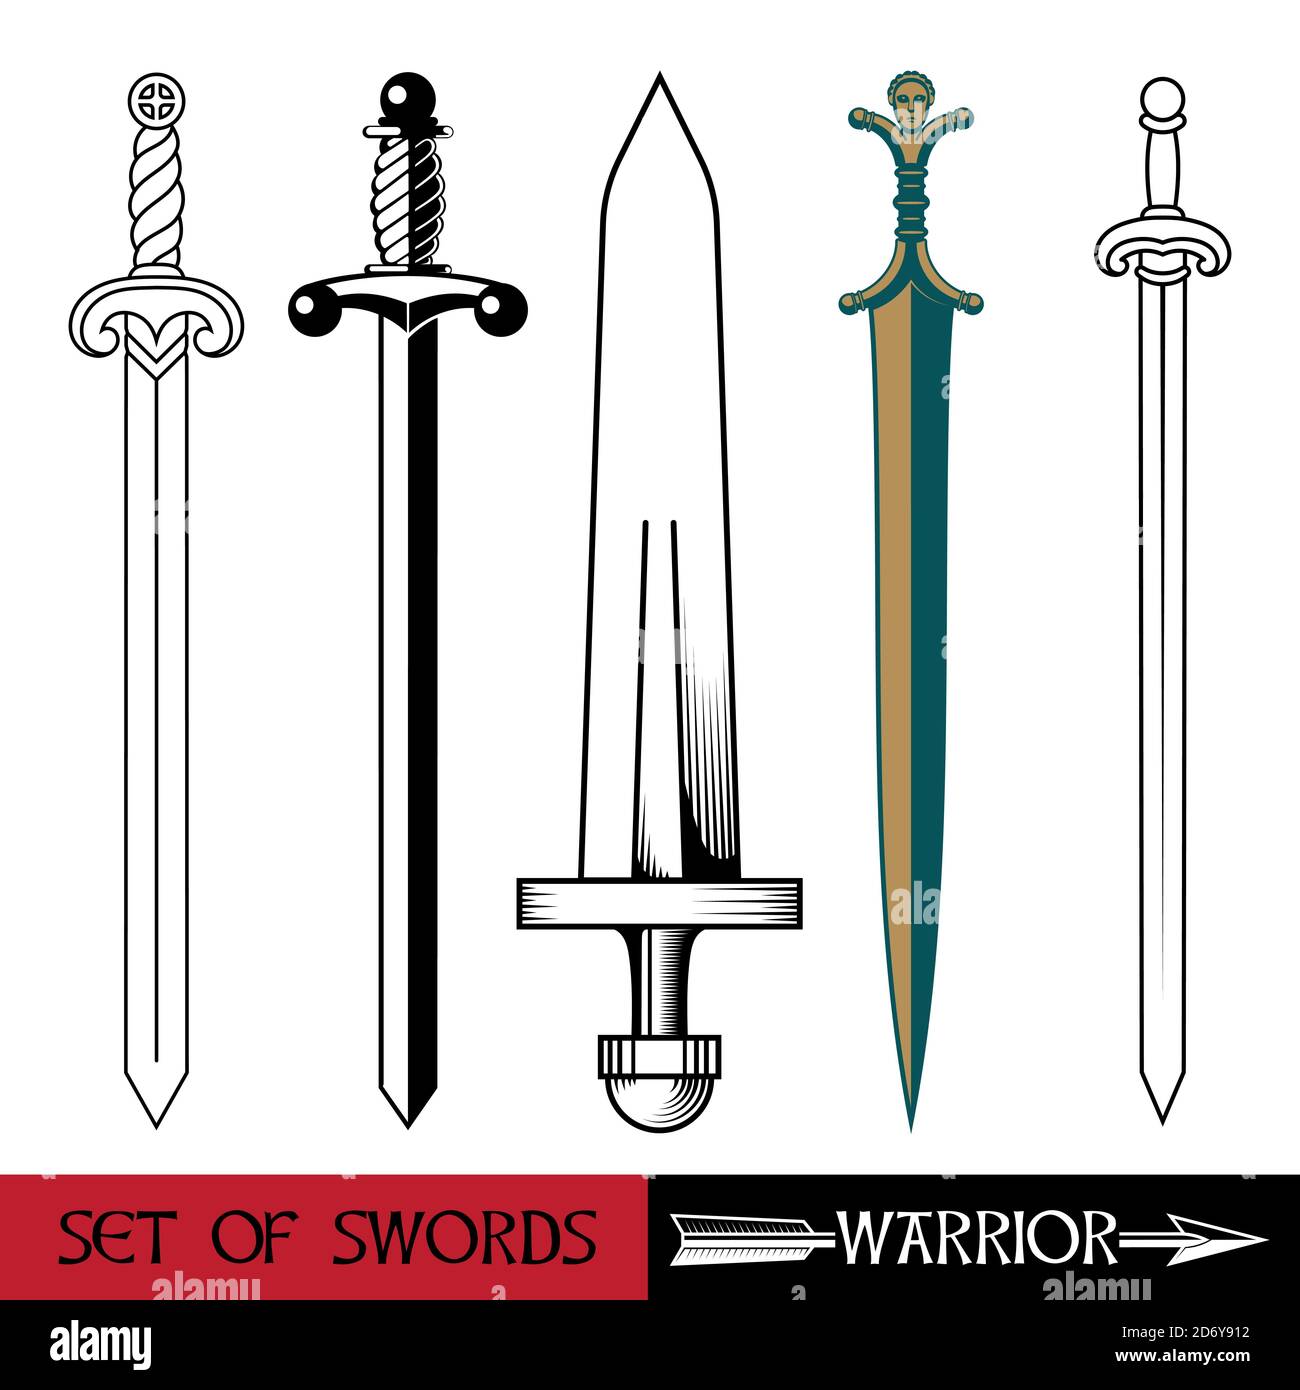 Arme de l'Europe antique - ensemble d'épées. Épée de Vikings, croiseurs de chevaliers d'épée, épée celtique Illustration de Vecteur